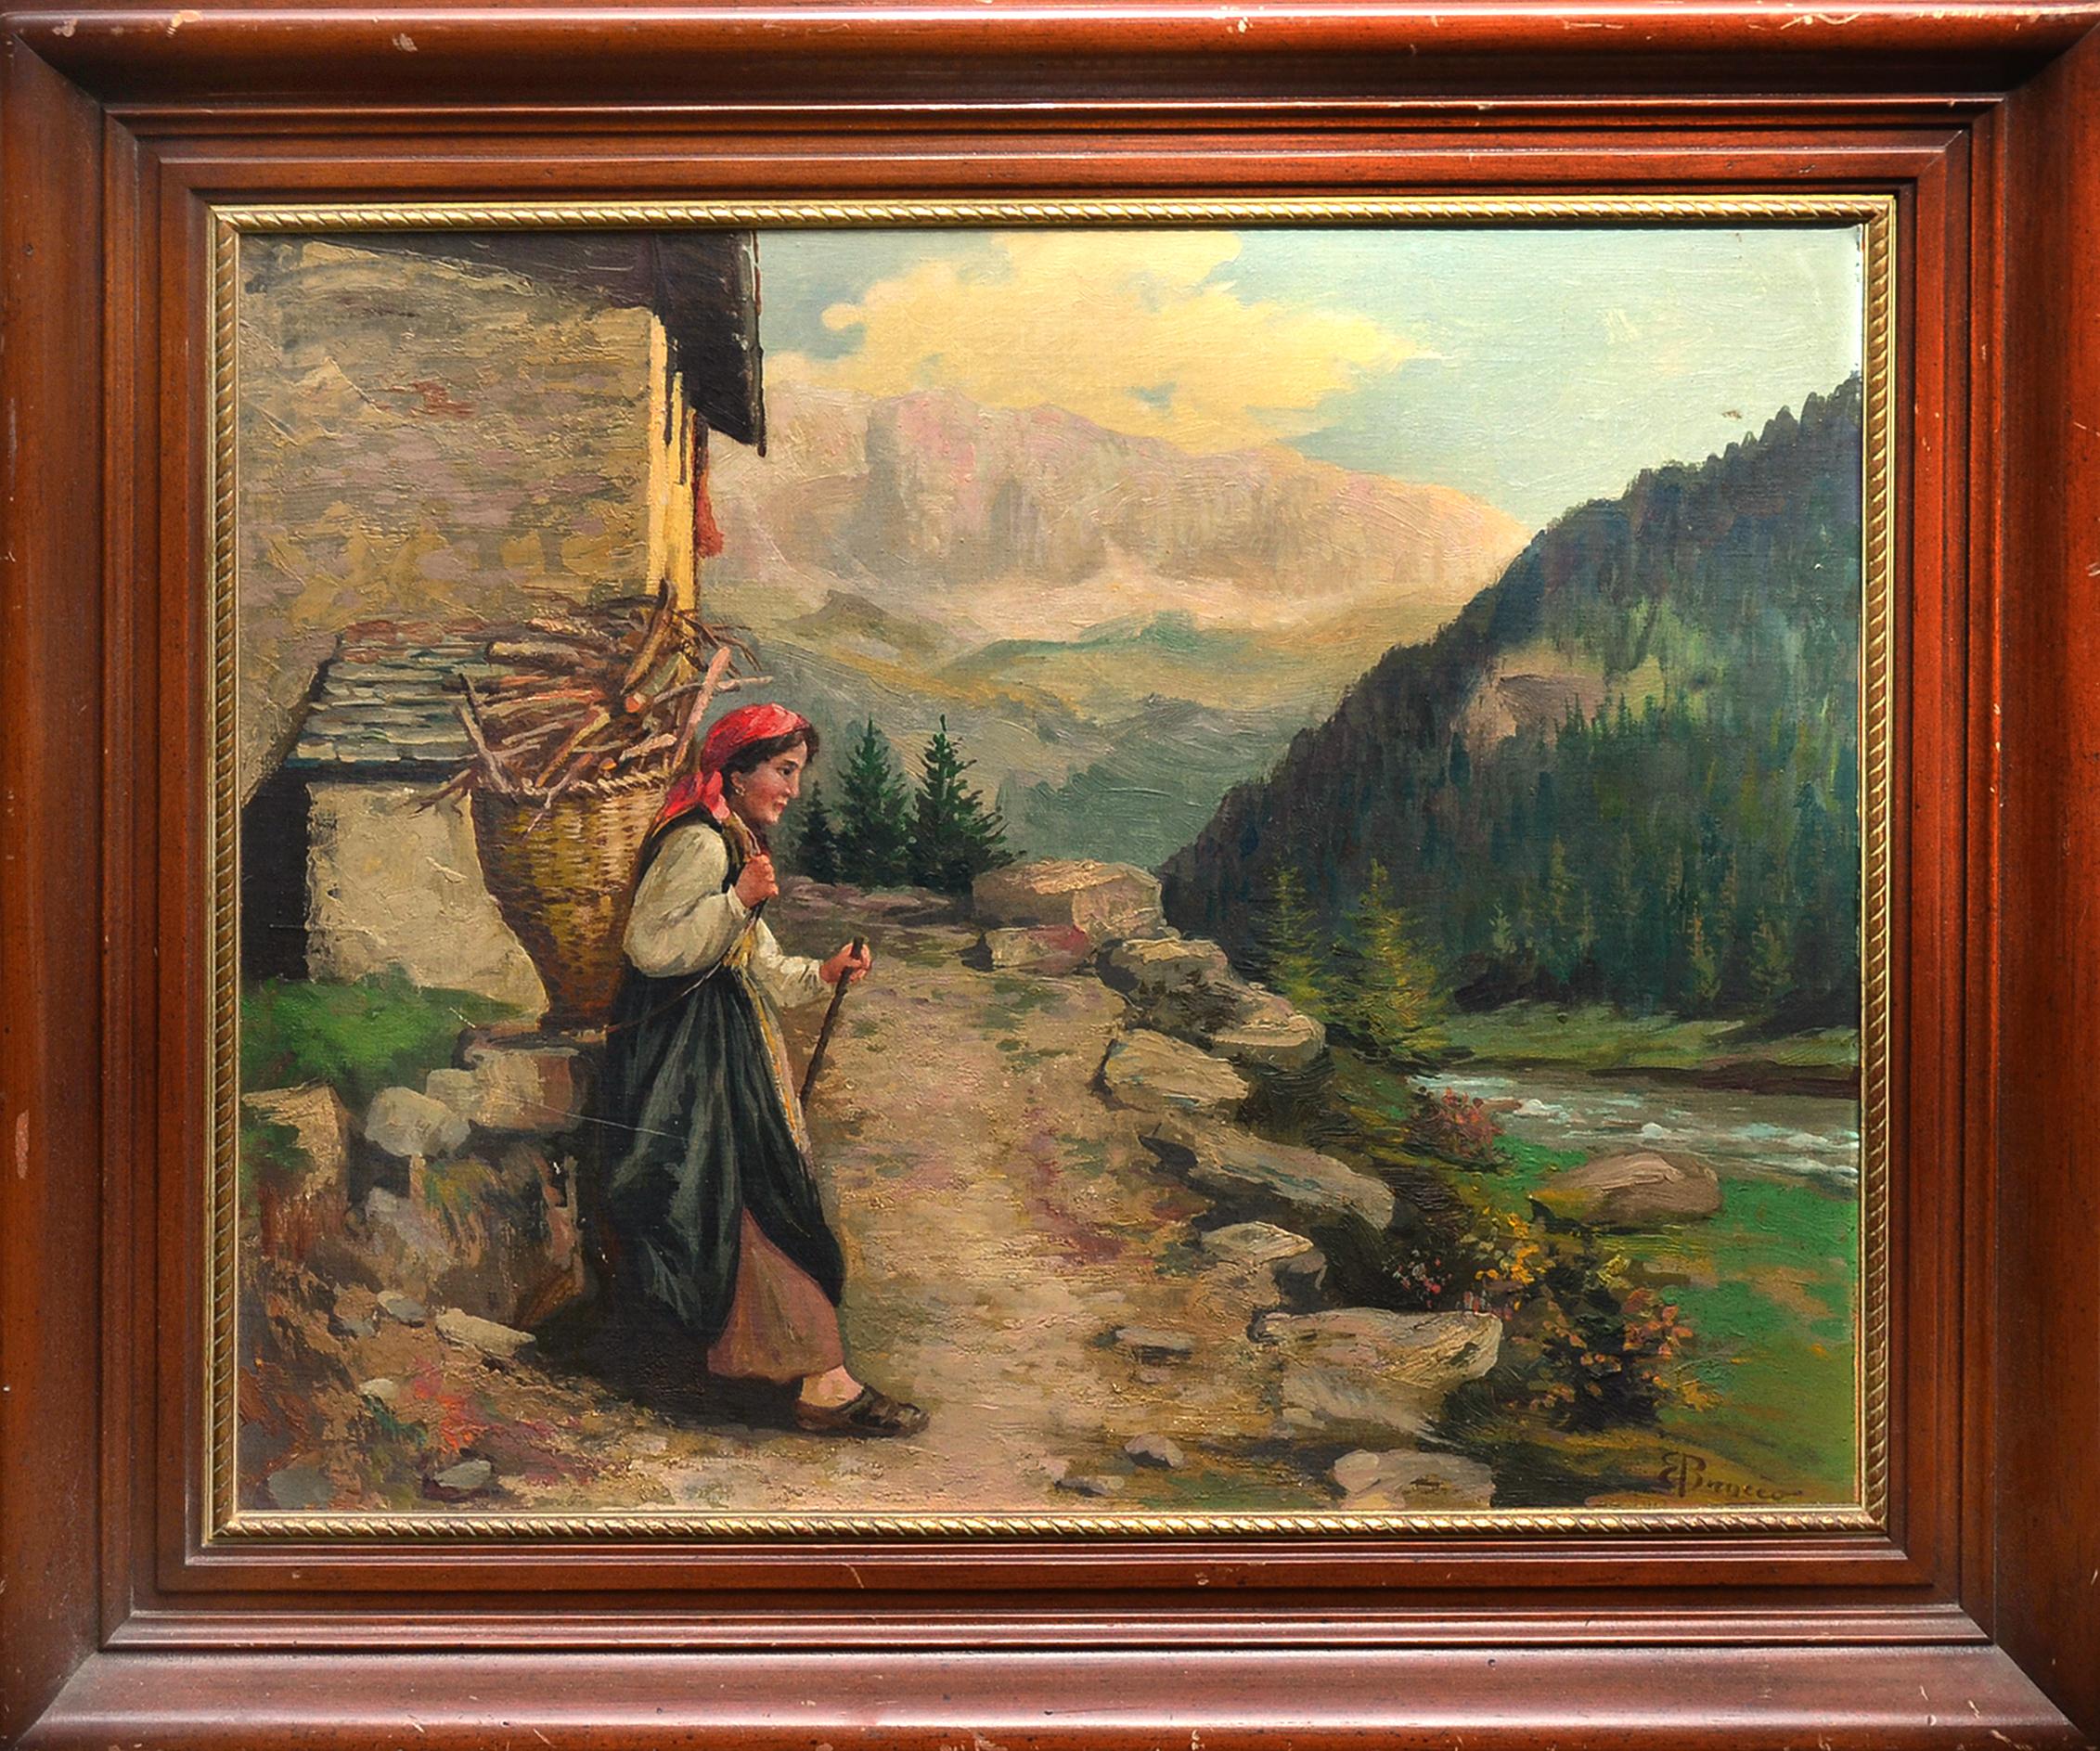 Landscape Painting Enrique Brocco - Femme transportant du bois, paysage figuratif du début du 20e siècle